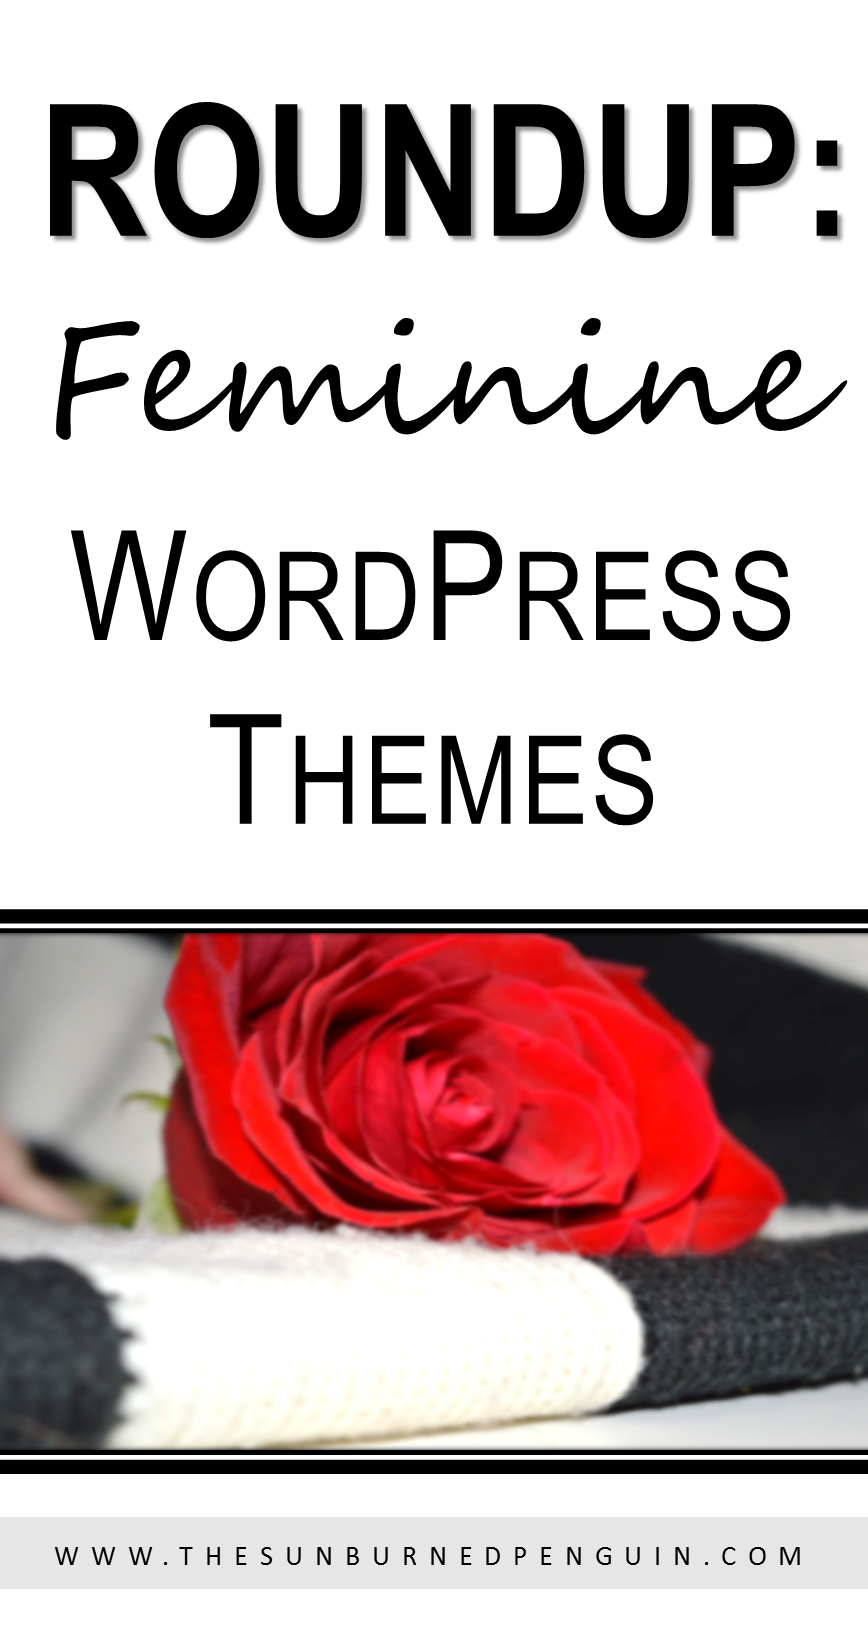 Roundup: Feminine WordPress Themes